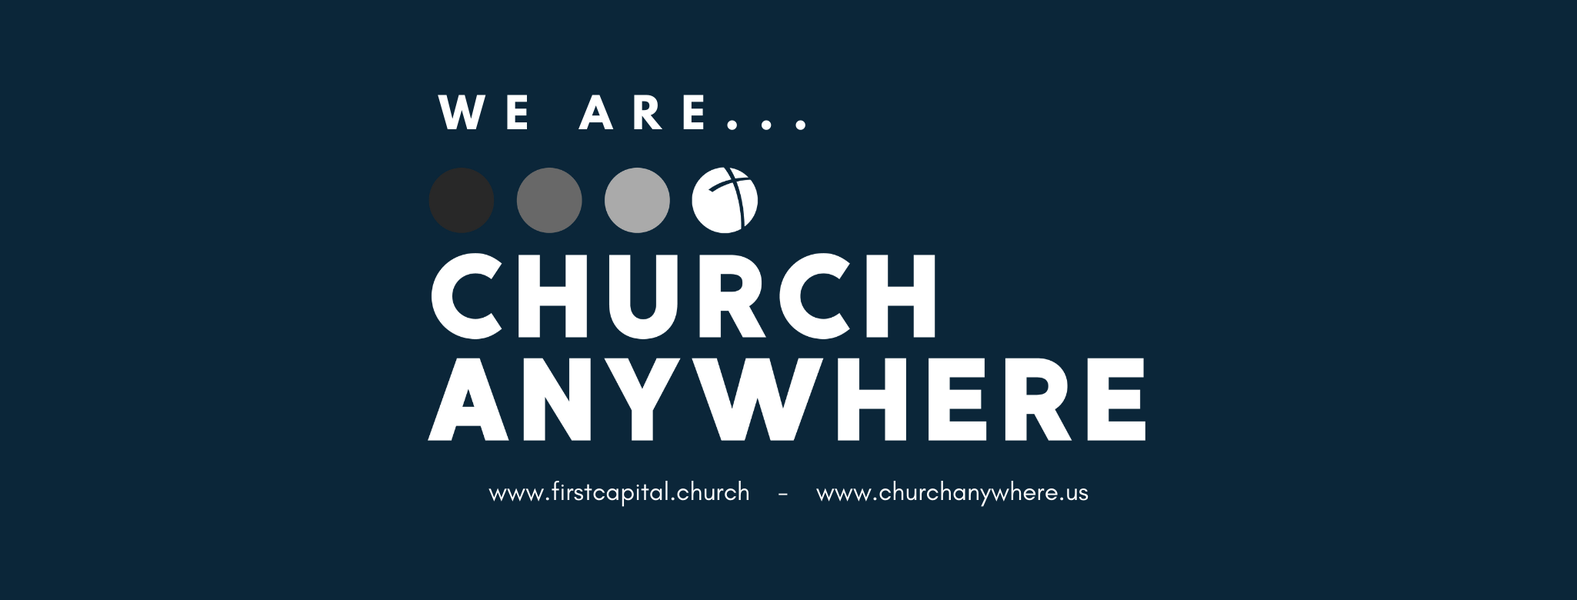 Church Anywhere Sundays 2:45 PM – 3:15 PM